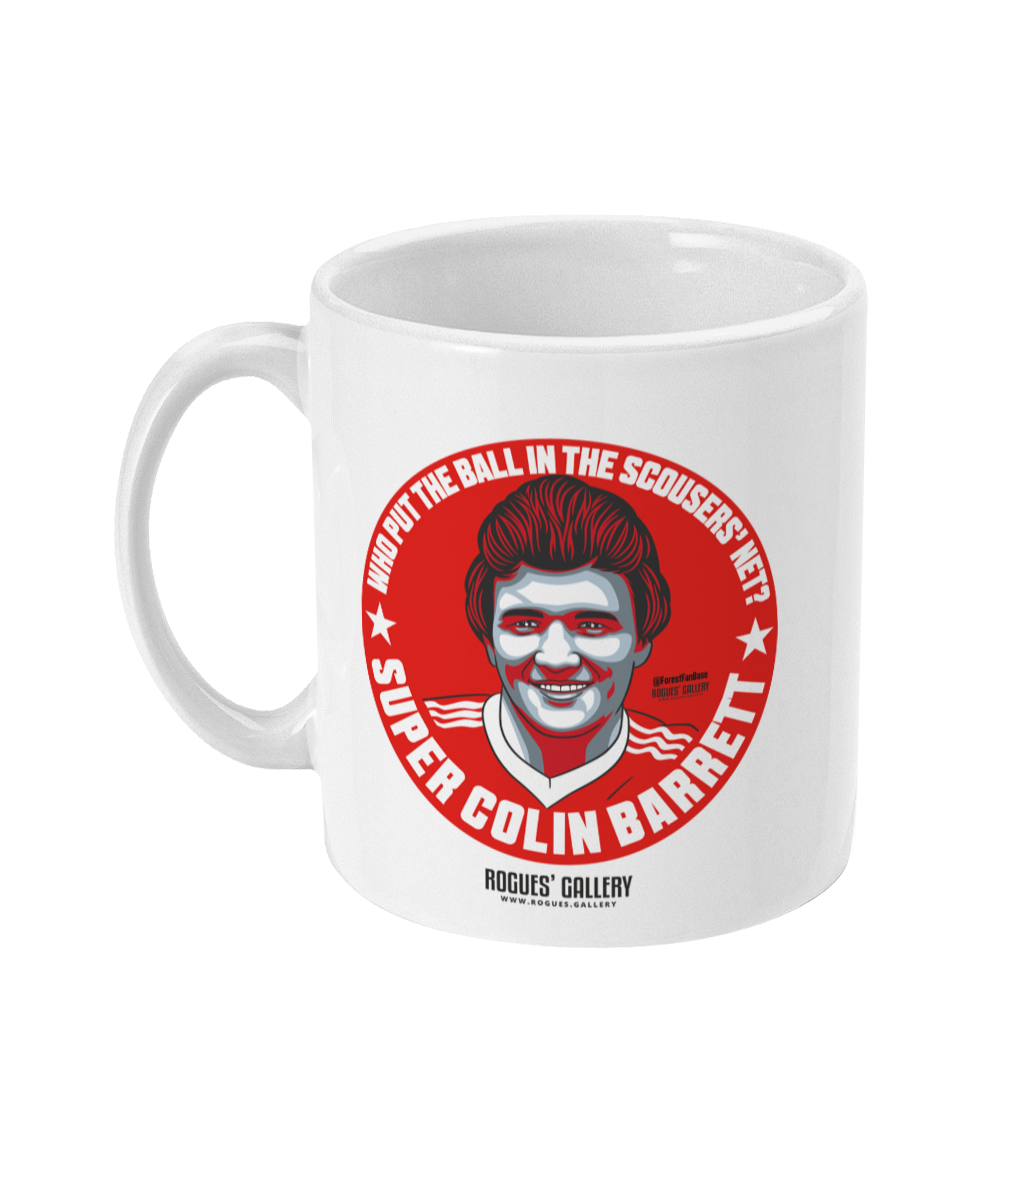 Colin Barrett Nottingham Forest mug scouser net goal